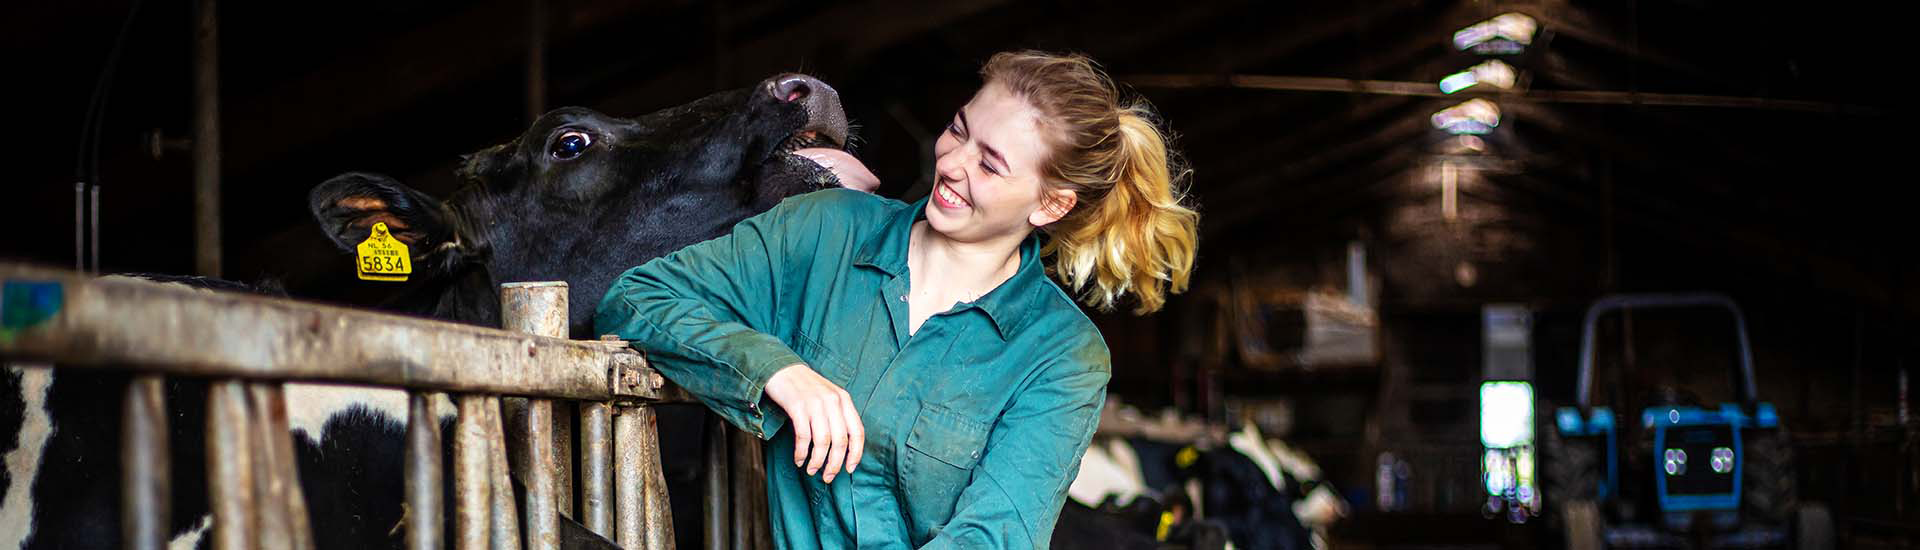 Spinder bietet ein Gesamtkonzept mit Produkten für den Stall, die der Kuh und dem Landwirt gleichermaßen gerecht werden.